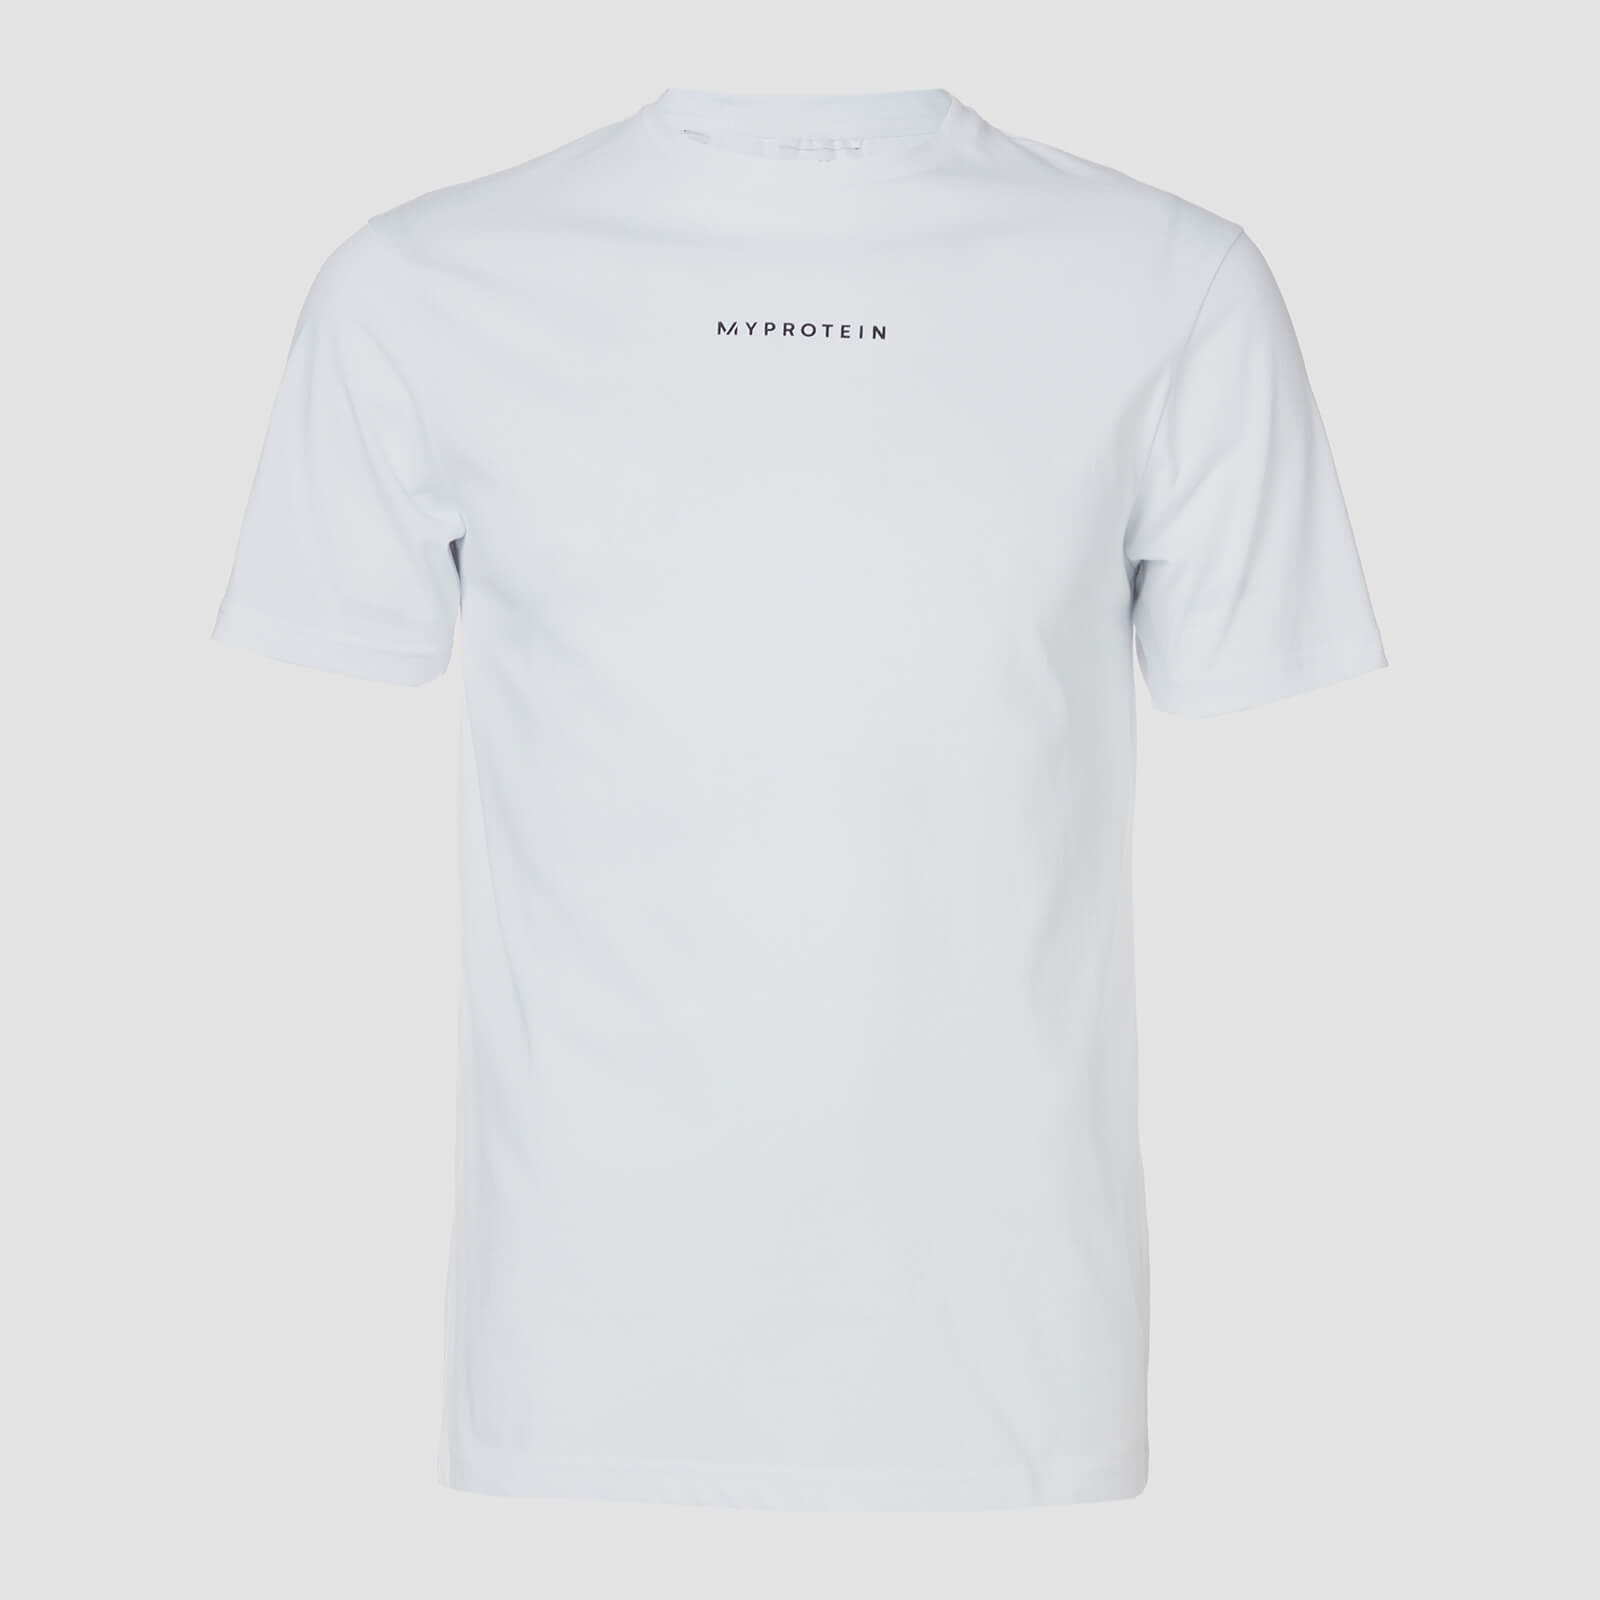 Myprotein T-shirt Original Contemporary - Bianco - XXL